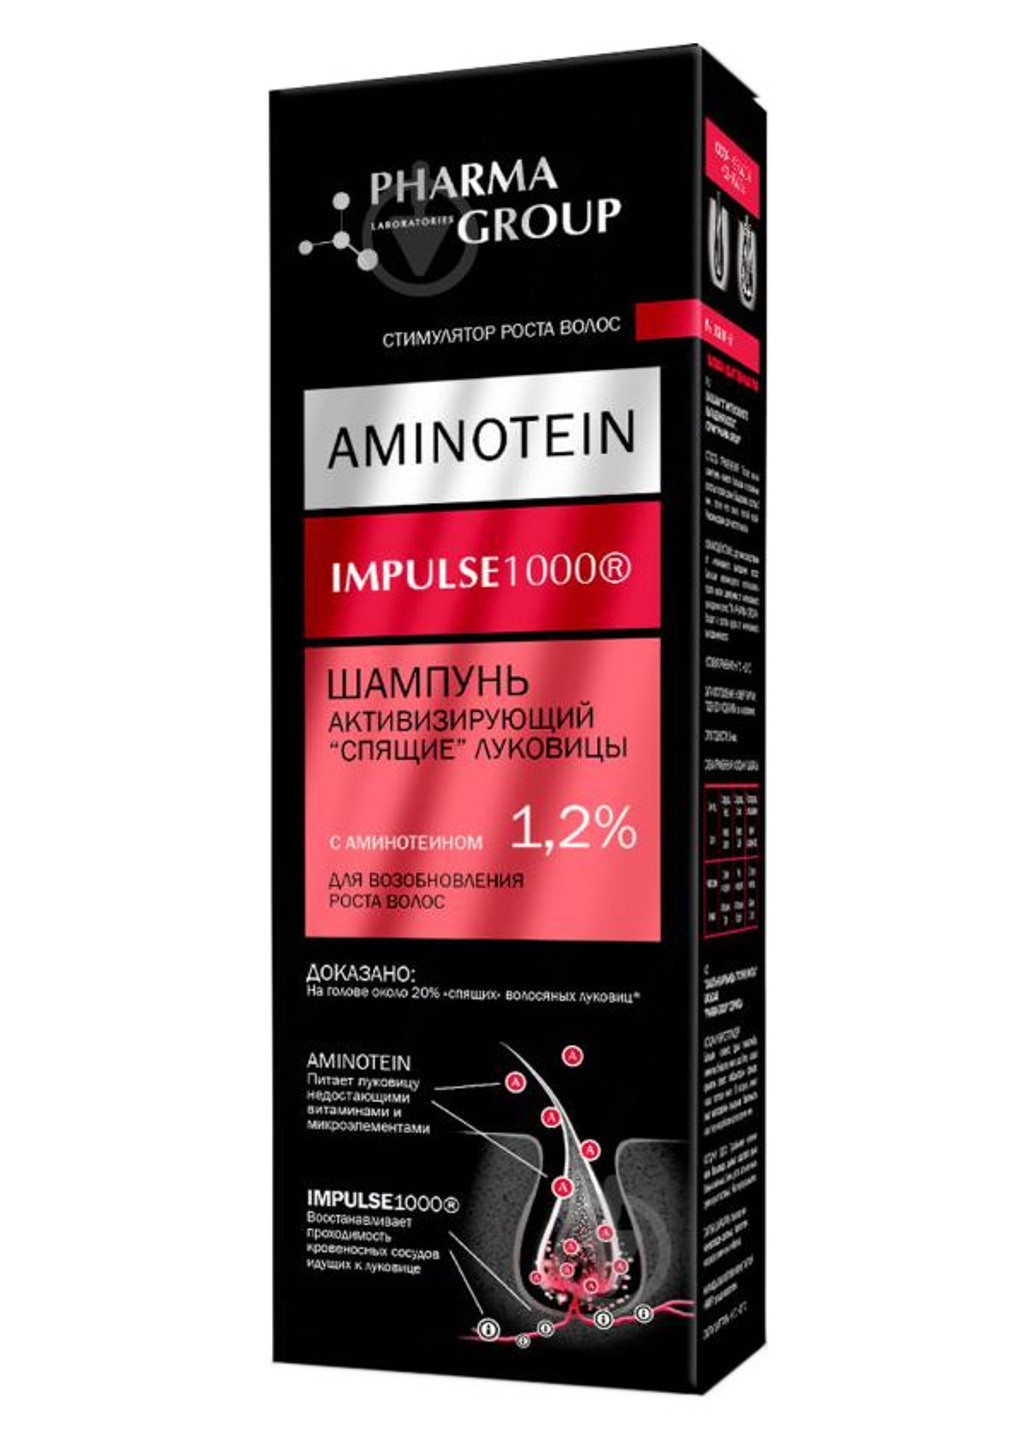 Шампунь для возобновления роста волос, активизирующий "спящие" луковицы Aminotein Impulse 1000 150 мл Pharma Group (190301608)